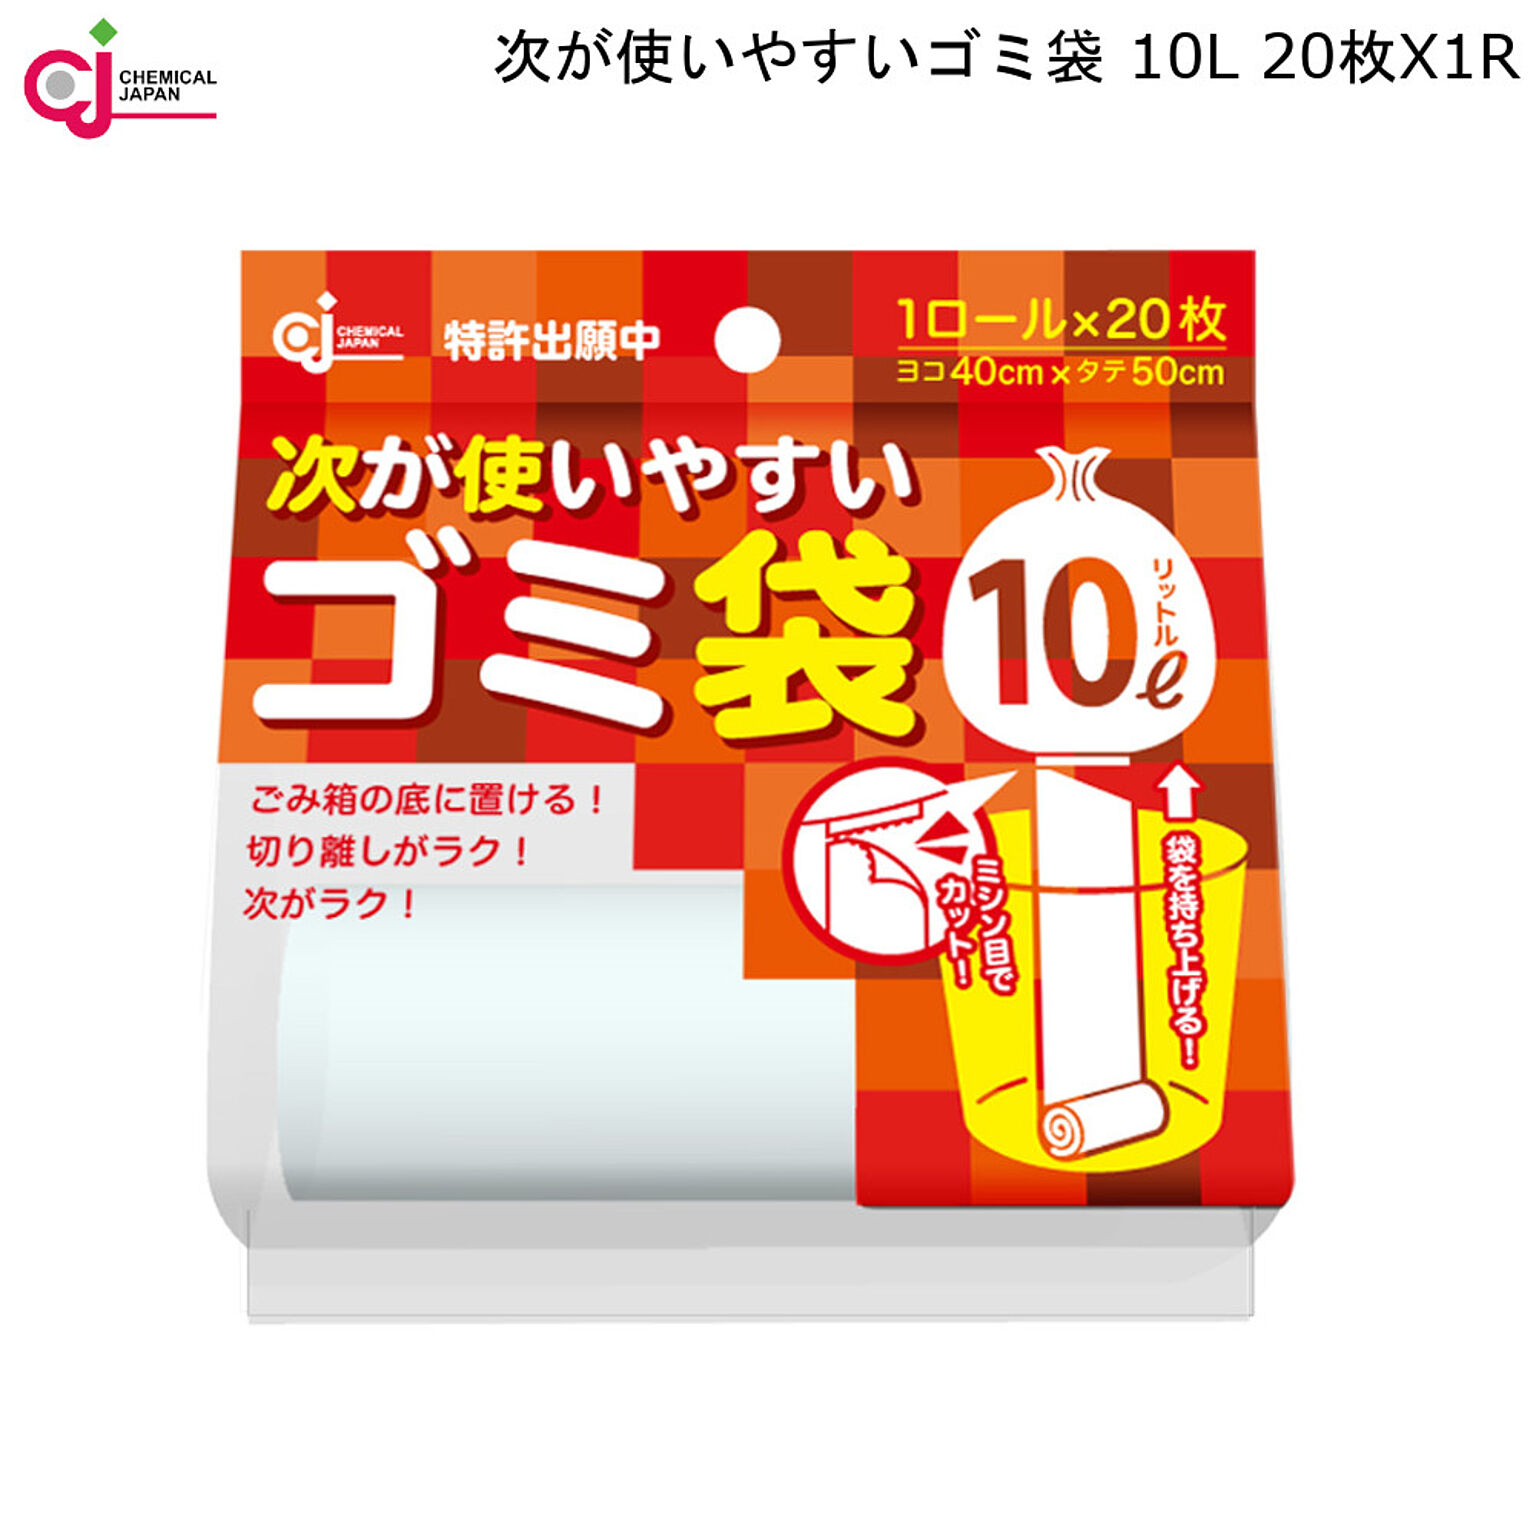 次が使いやすい ゴミ袋 10L 20枚×1R HD-504N ケミカル ジャパン